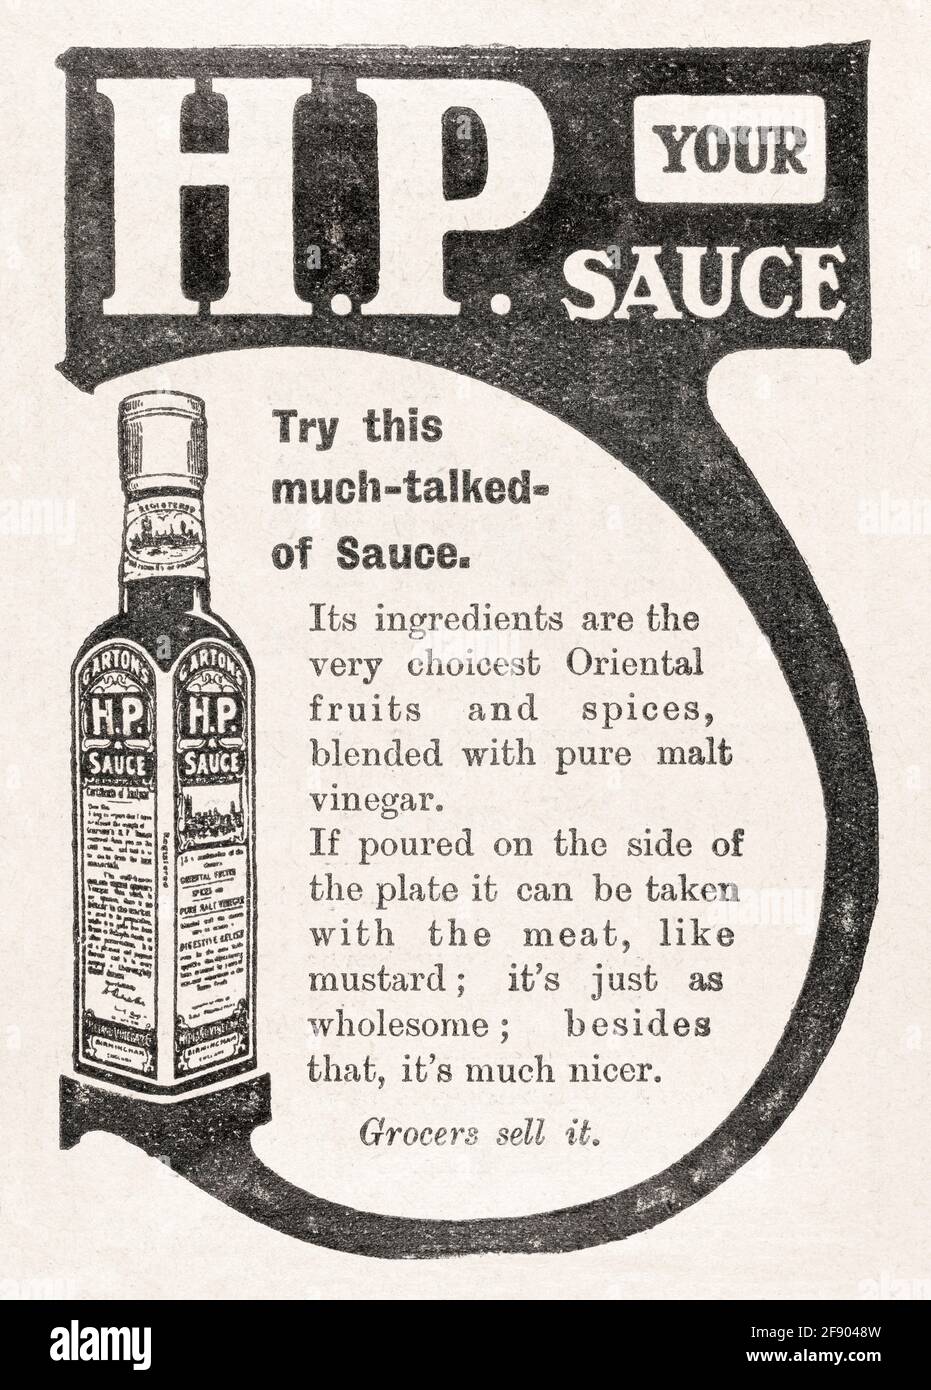 Publicité de 1907 dans le magazine HP sauce de Garton de l'ancien époque victorienne - normes pré-publicitaires. Publicité sur les aliments anciens, publicités sur les produits alimentaires anciens. Banque D'Images